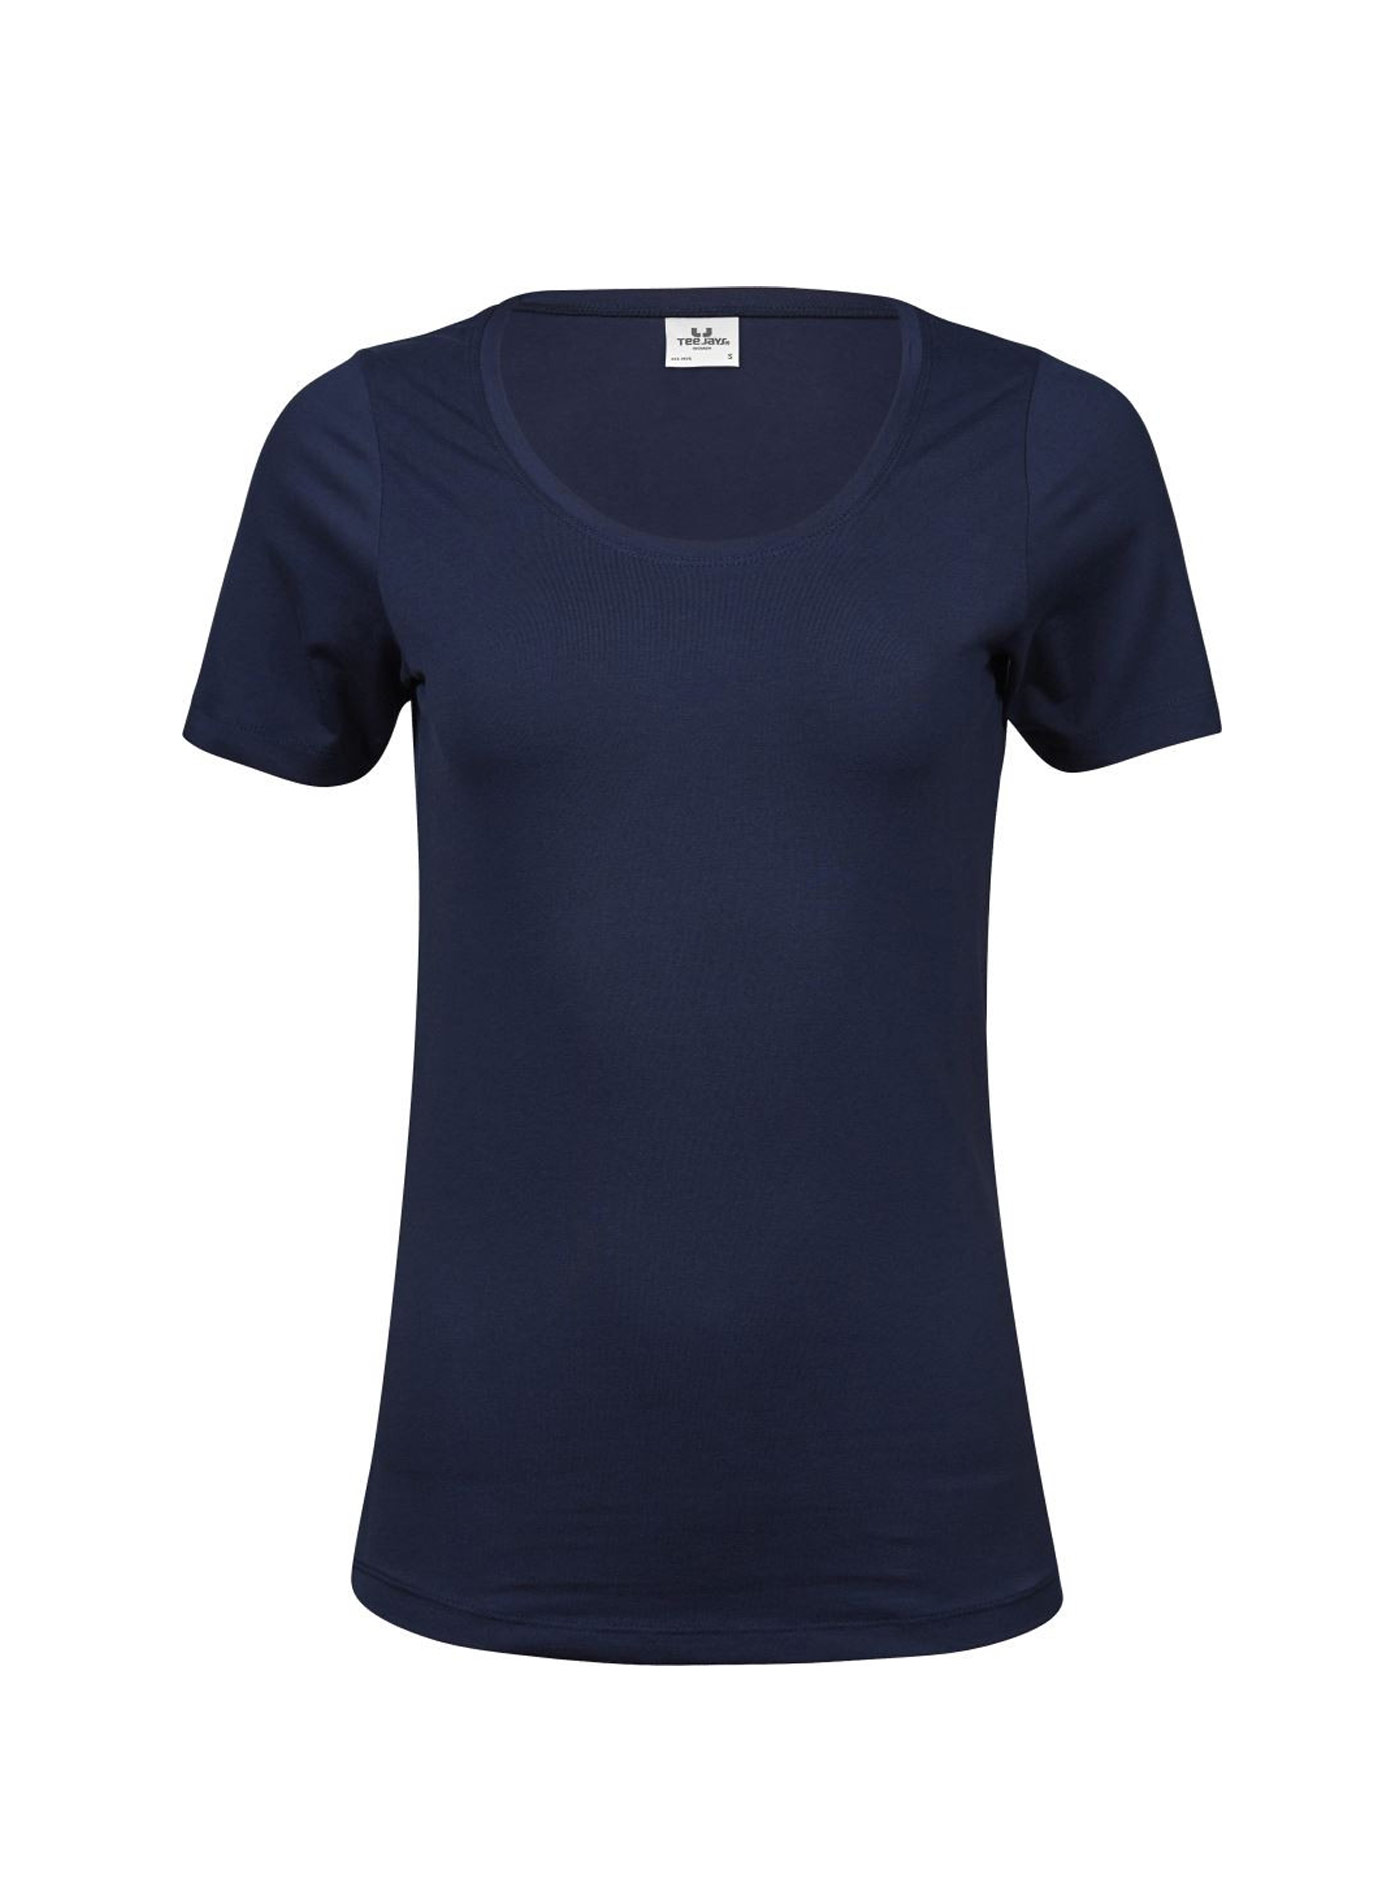 Dámské Stretch Tee tričko Tee Jays - Námořní modrá L